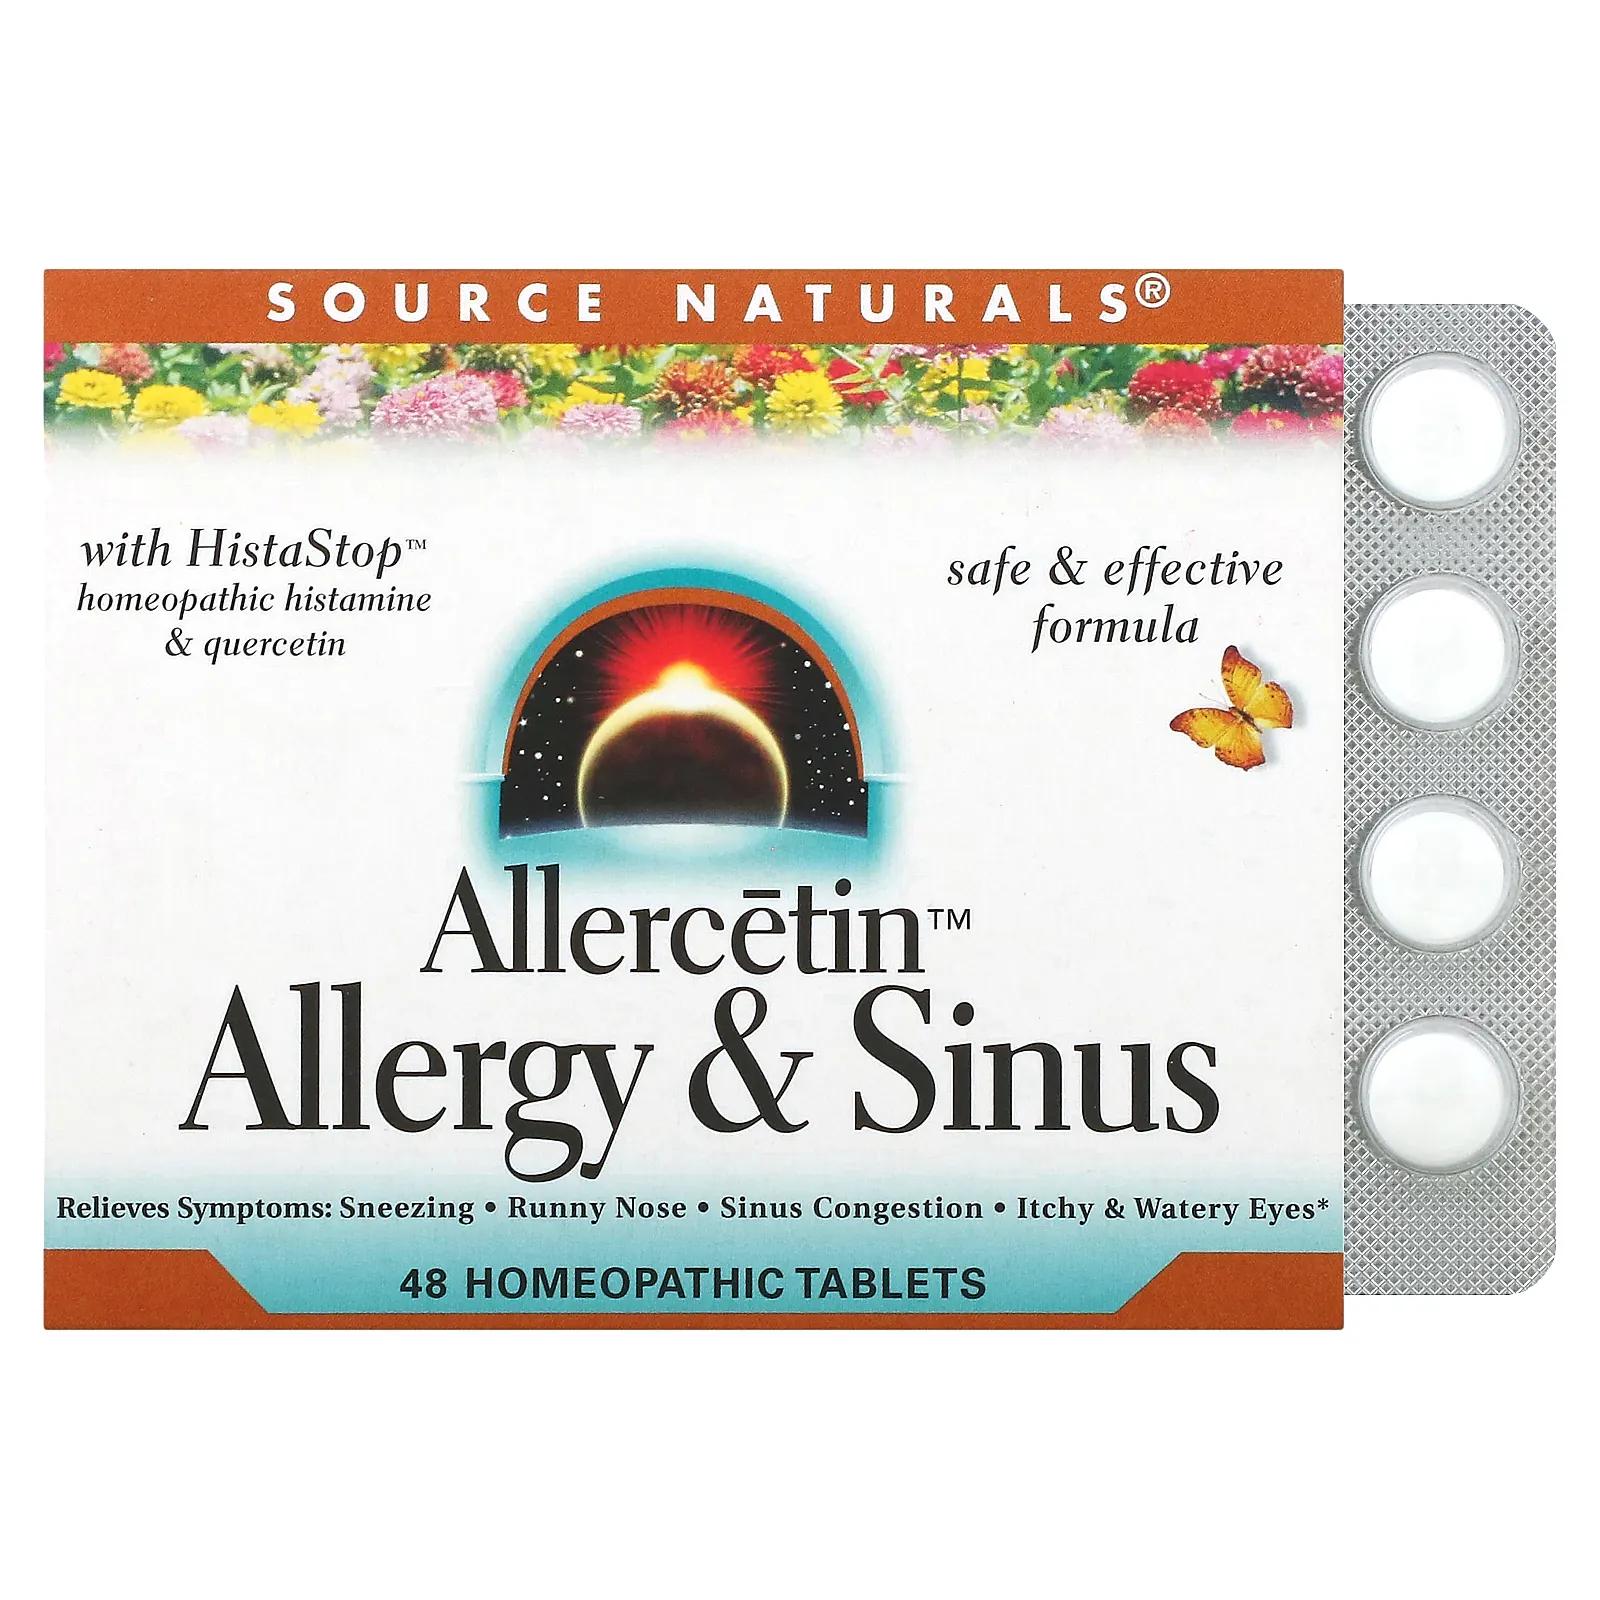 Source Naturals Allercetin Средство от аллергии и заложенности носа 48 гомеопатических таблеток source naturals allercetin средство от аллергии и заложенности носа 48 гомеопатических таблеток